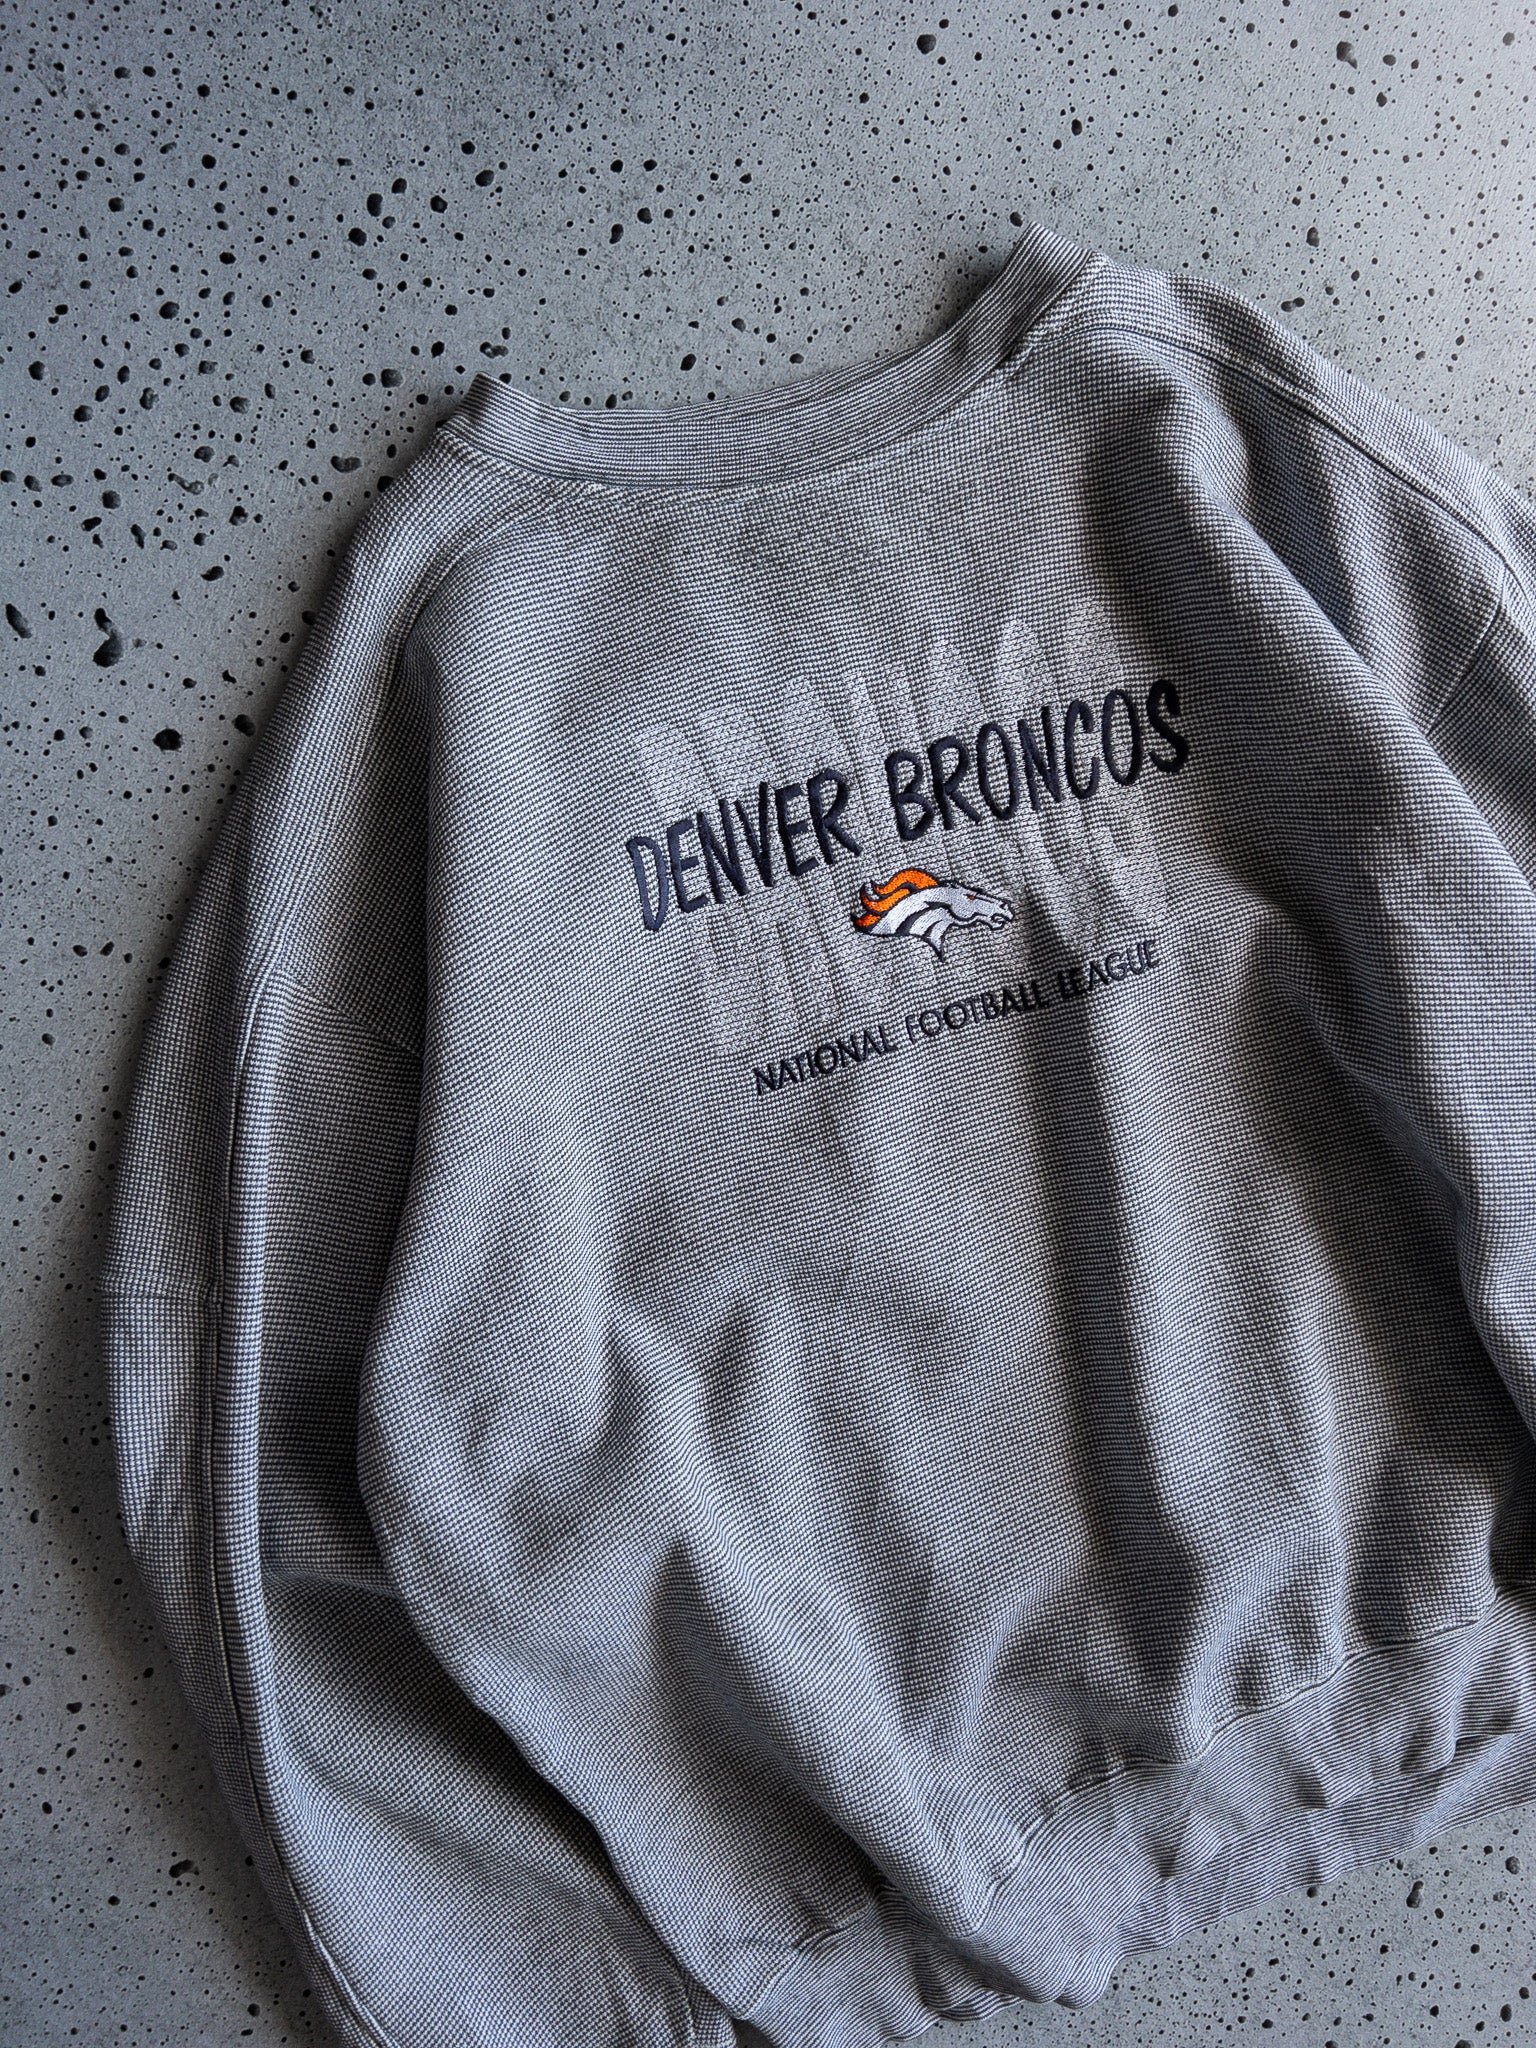 Vintage Denver Broncos Sweatshirt (XL)